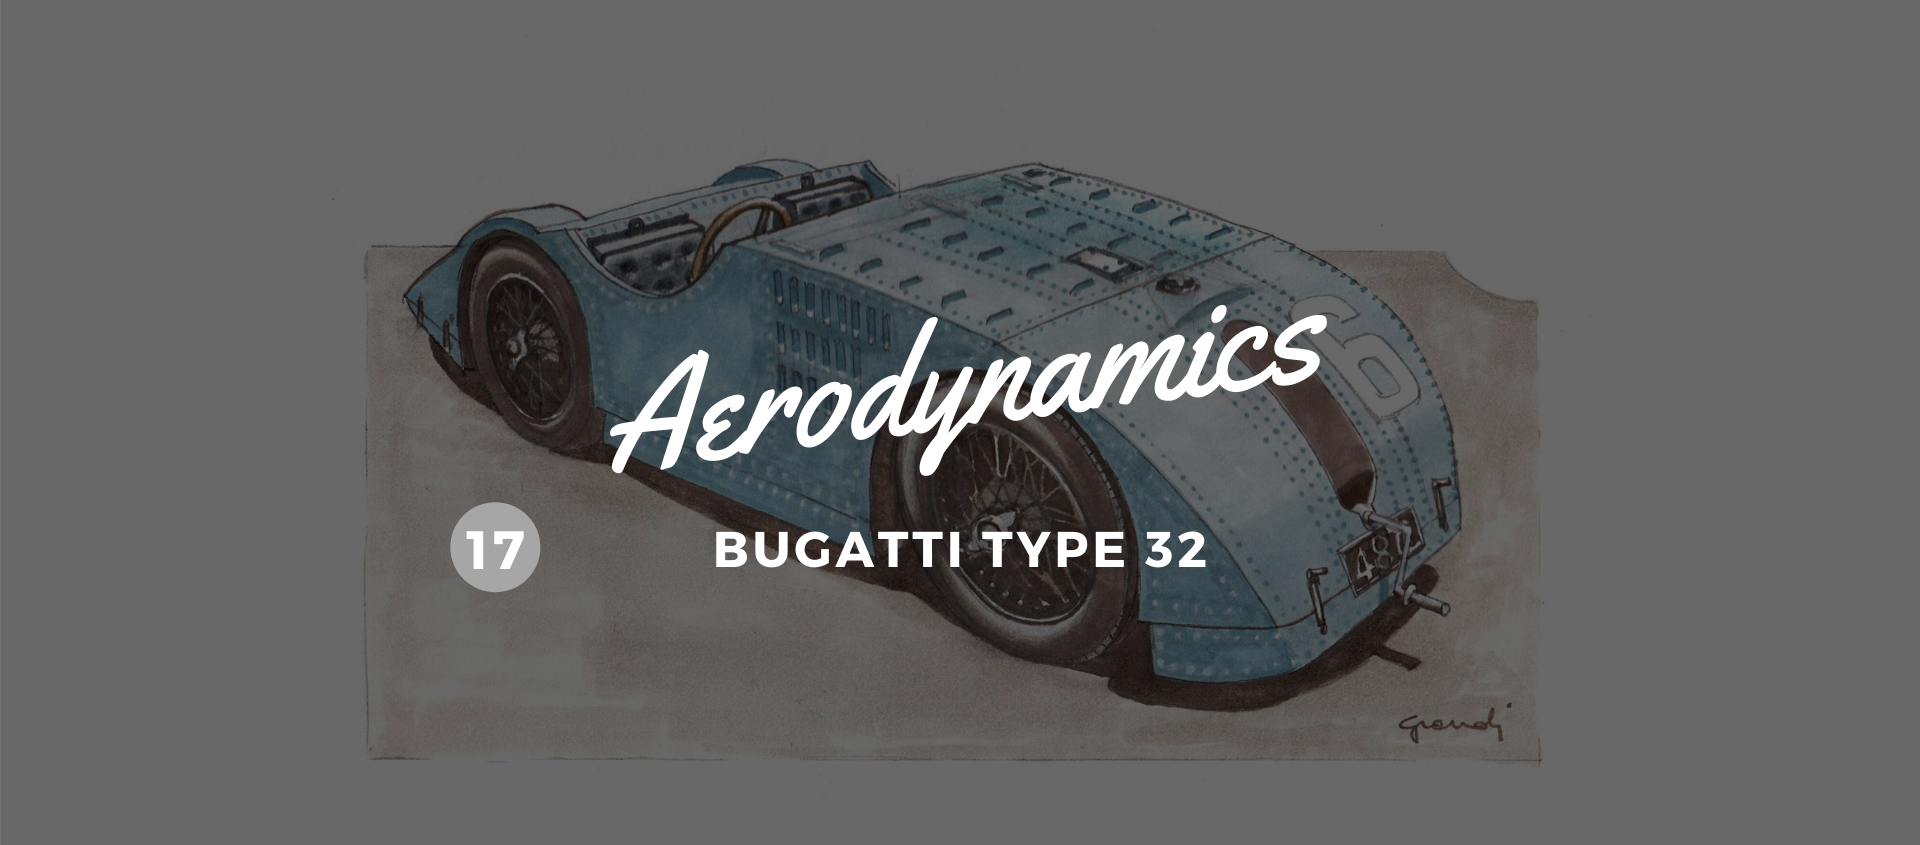 1923. The Bugatti Type 32. A racing tank image